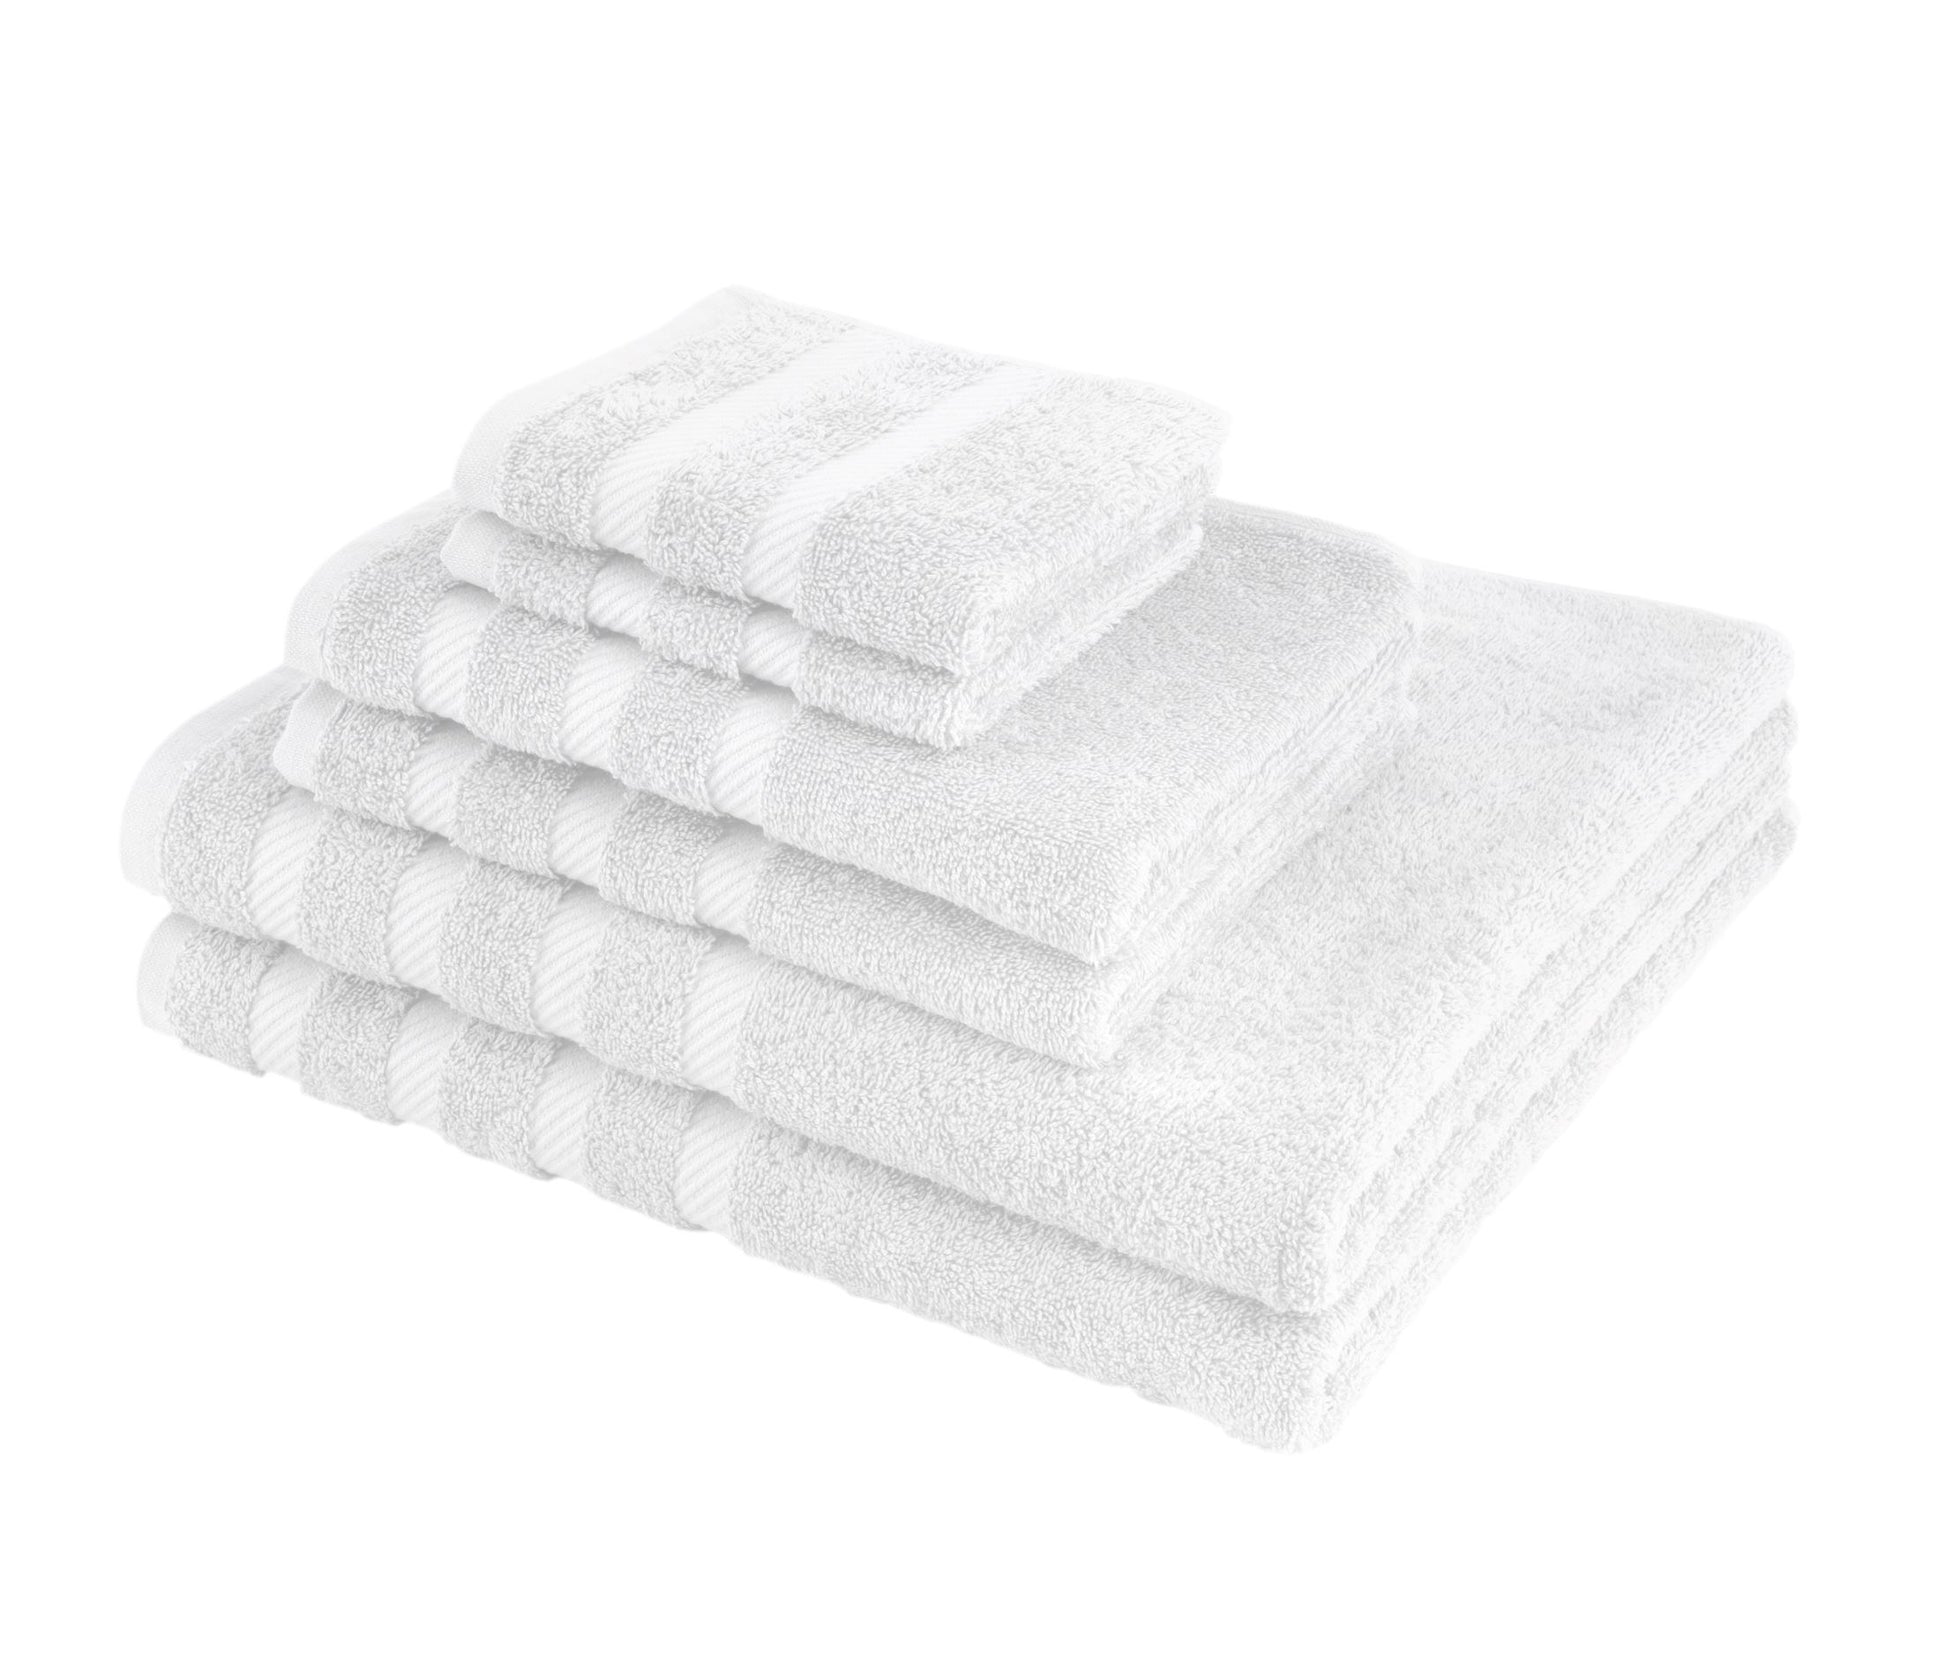 American Soft Linen Colonial Blue 6-Piece Turkish Cotton Towel Set